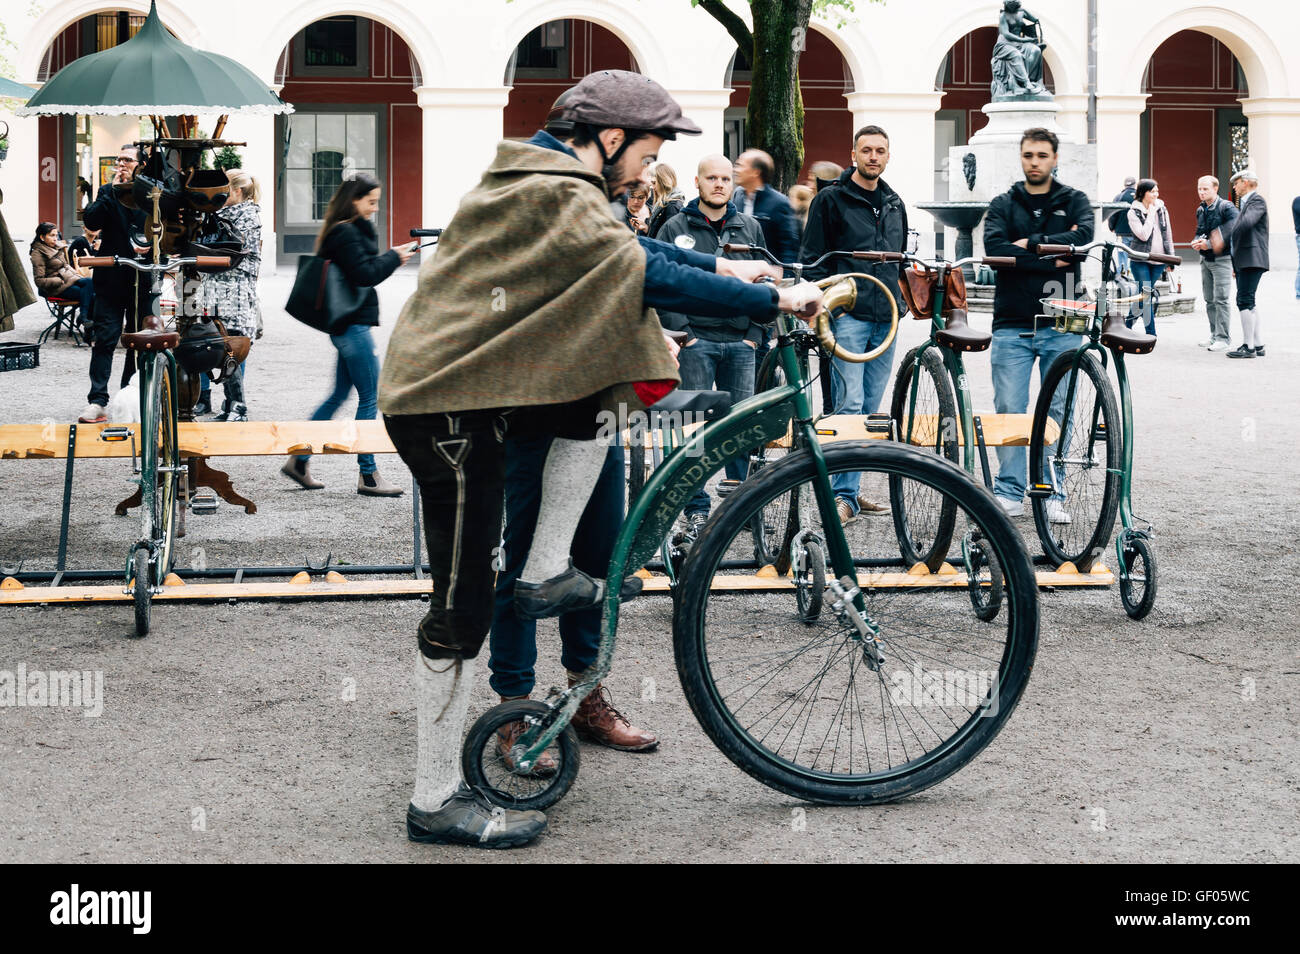 München, Deutschland - 5. Mai 2015: Alte Fahrräder genannt: Penny Farthing,  in einem Park in München mit Menschen mit traditioneller Kleidung  Stockfotografie - Alamy